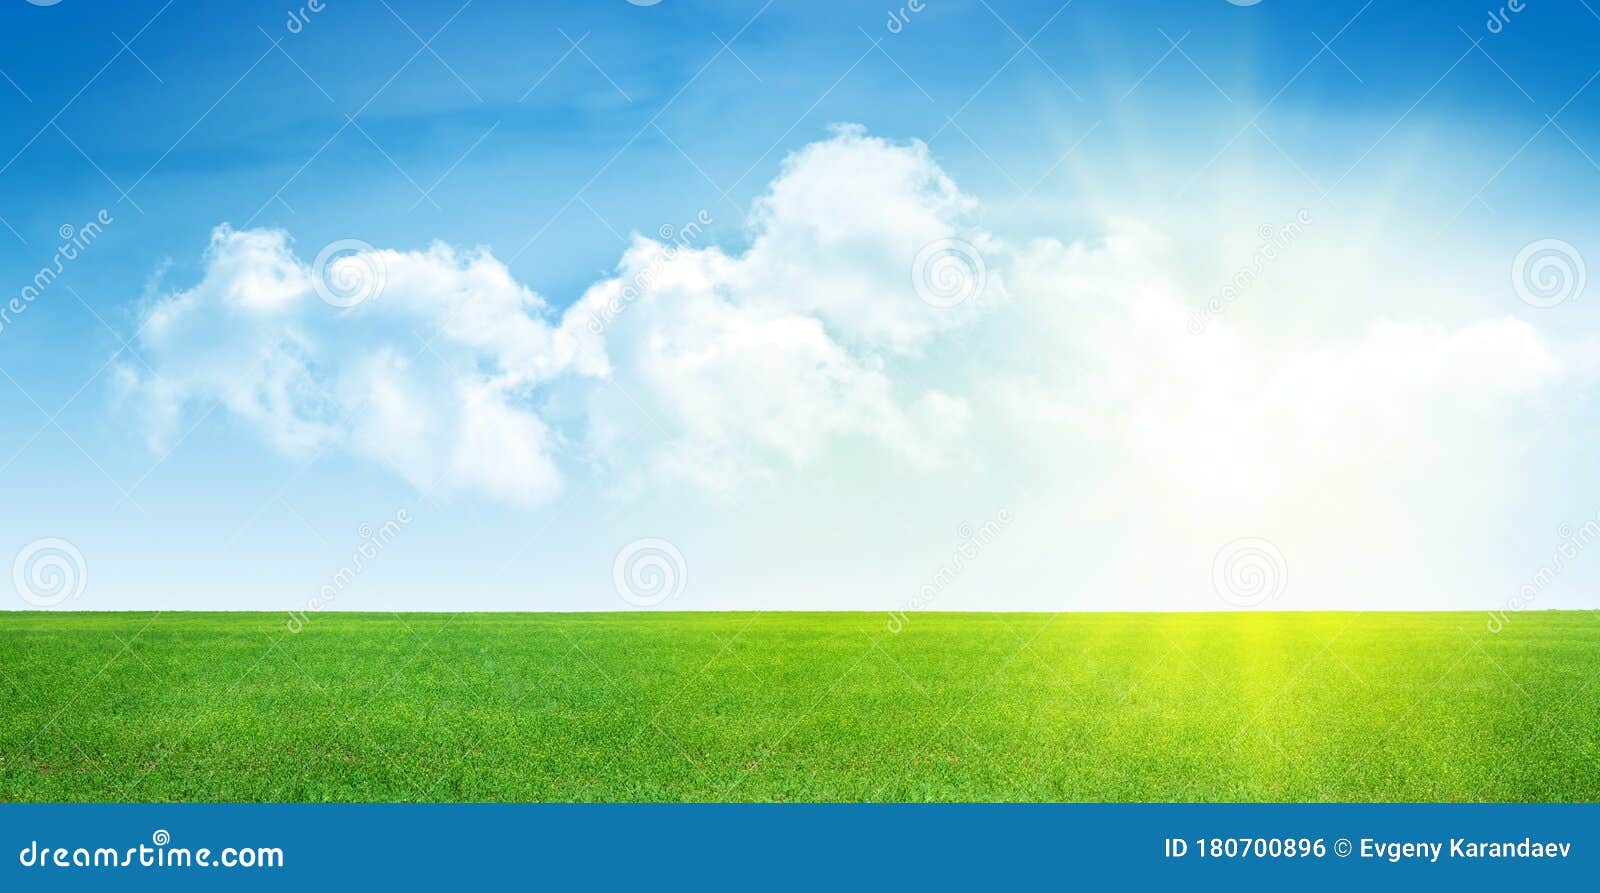 Bạn đã bao giờ mơ về một nơi yên bình, cảm thấy bình tĩnh và bình yên? Hình ảnh đồng cỏ xanh và bầu trời trong xanh này chắc chắn sẽ giúp bạn tìm được những điều đó. Hãy cùng nhìn ngắm để đưa tâm hồn vào không gian đầy lãng mạn này.